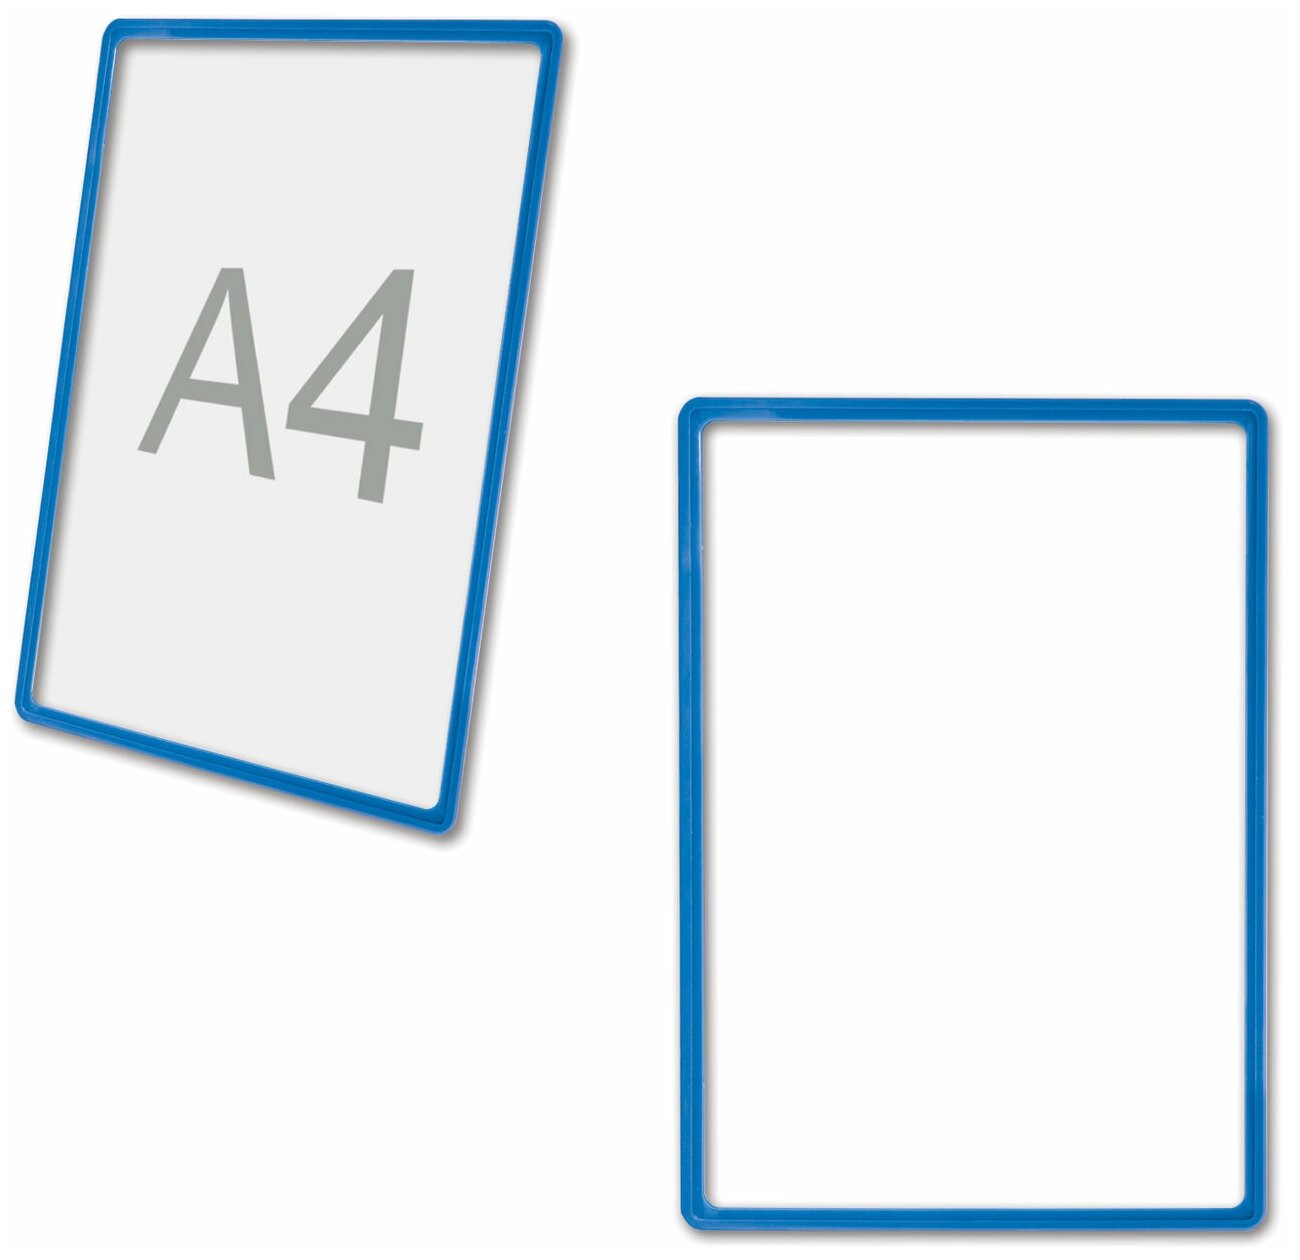 Рамка POS для ценников, рекламы и объявлений А4, синяя, без защитного экрана, 290250 - 1 шт.